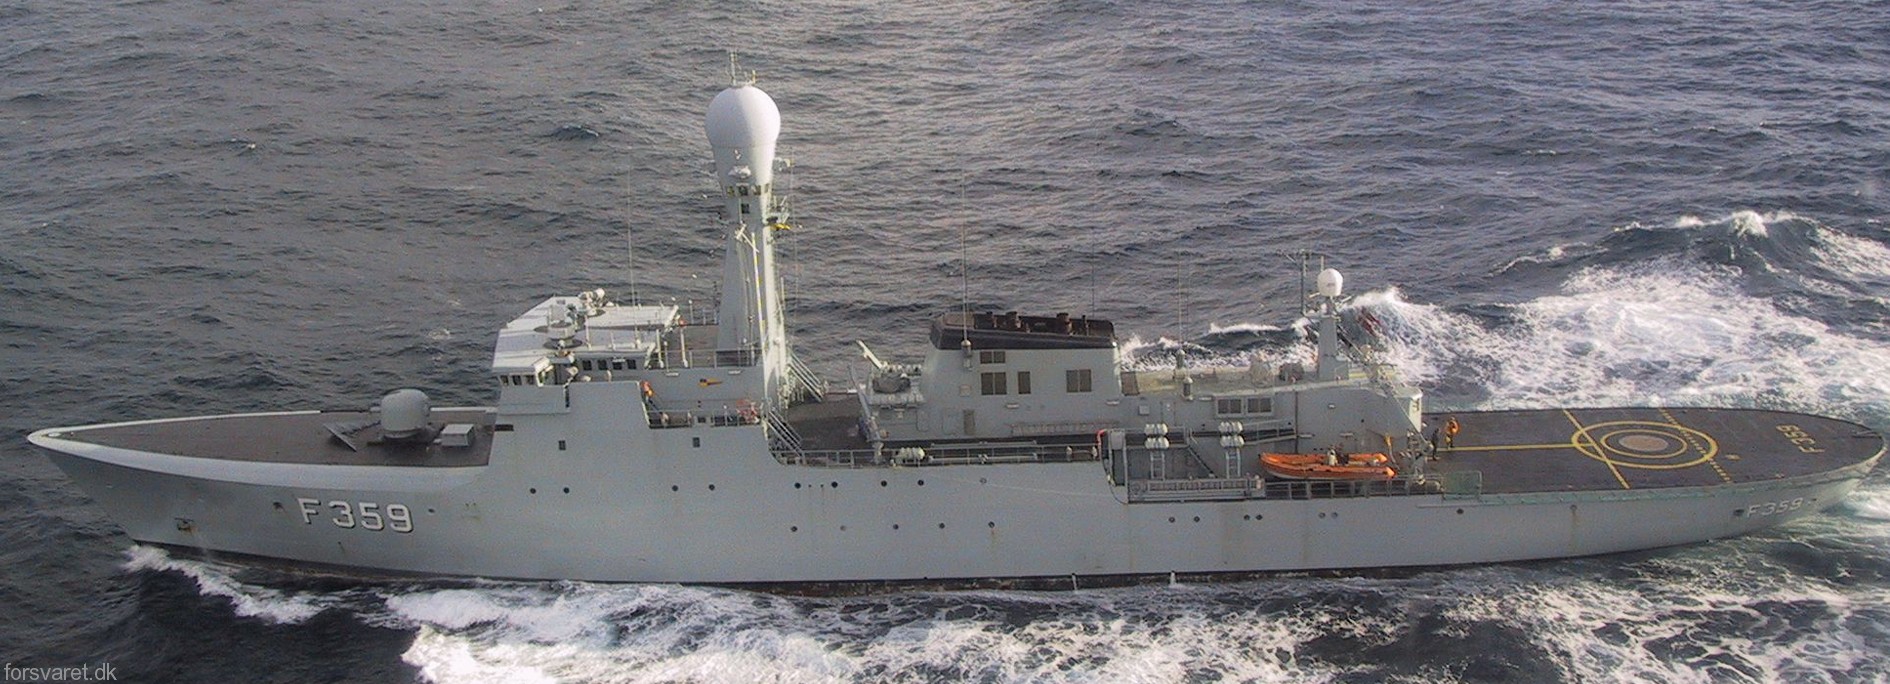 f-359 hdms vaedderen thetis class ocean patrol frigate royal danish navy kongelige danske marine kdm inspektionsskibet 14